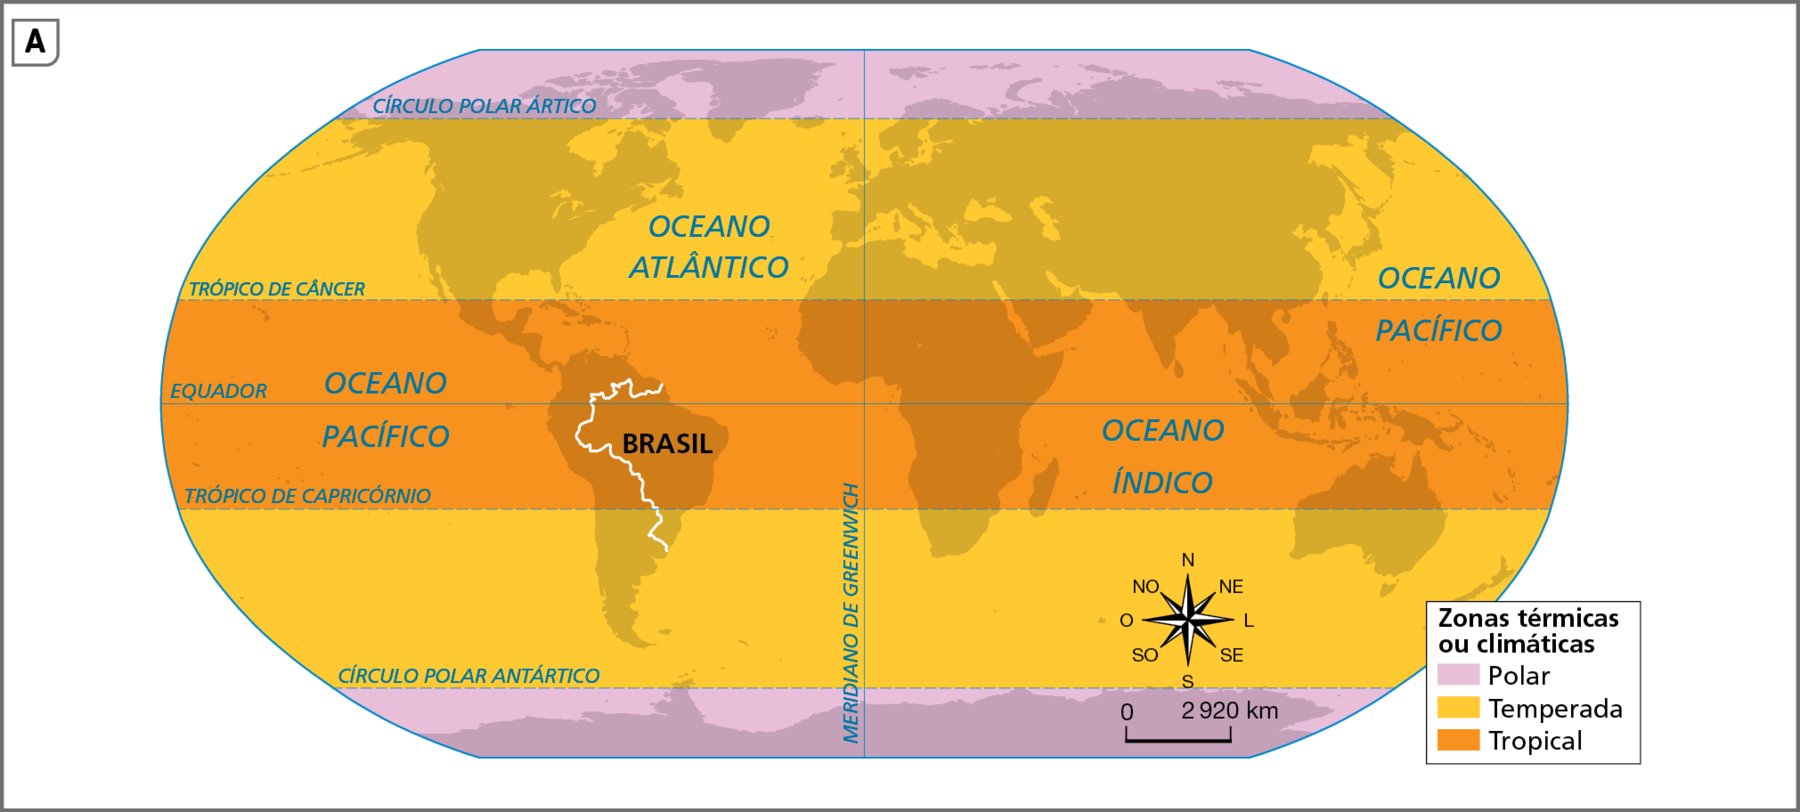 Mapa. Mundo: zonas térmicas ou climáticas. Planisfério mostrando as zonas térmicas ou climáticas do mundo, que aparecem diferenciadas por cores. Zona Polar (em roxo-claro): compreende as porções ao norte do Círculo Polar Ártico e ao sul do Círculo Polar Antártico. Zona Temperada (em amarelo): compreende as porções entre o Círculo Polar Ártico e o Trópico de Câncer, no hemisfério norte, e entre o Trópico de Capricórnio e o Círculo Polar Antártico, no hemisfério sul. Zona Tropical (em laranja): compreende a faixa entre os trópicos de Câncer e Capricórnio. Na parte inferior, rosa dos ventos e escala de 0 a 2.920 quilômetros.